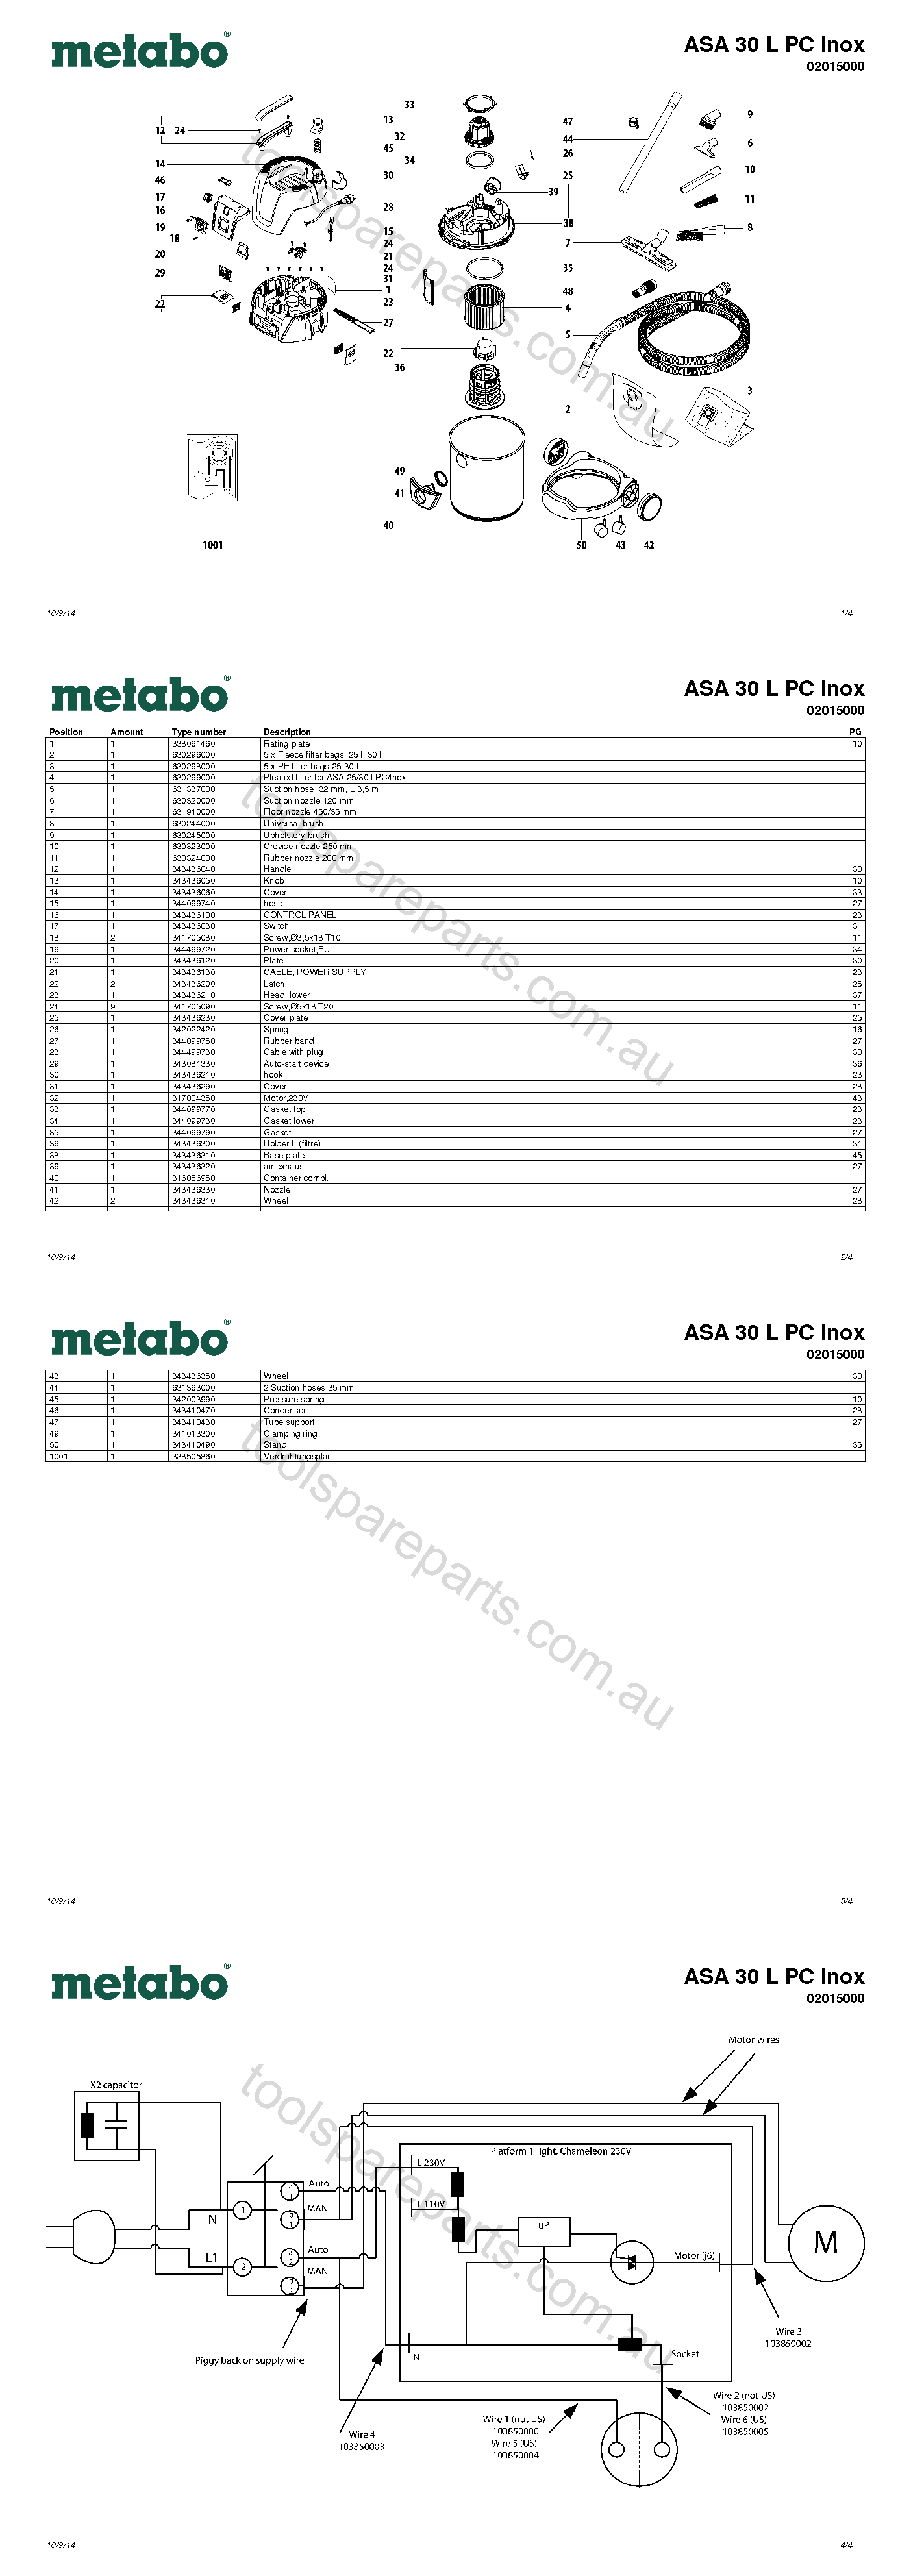 Metabo ASA 30 L PC Inox 02015000  Diagram 1